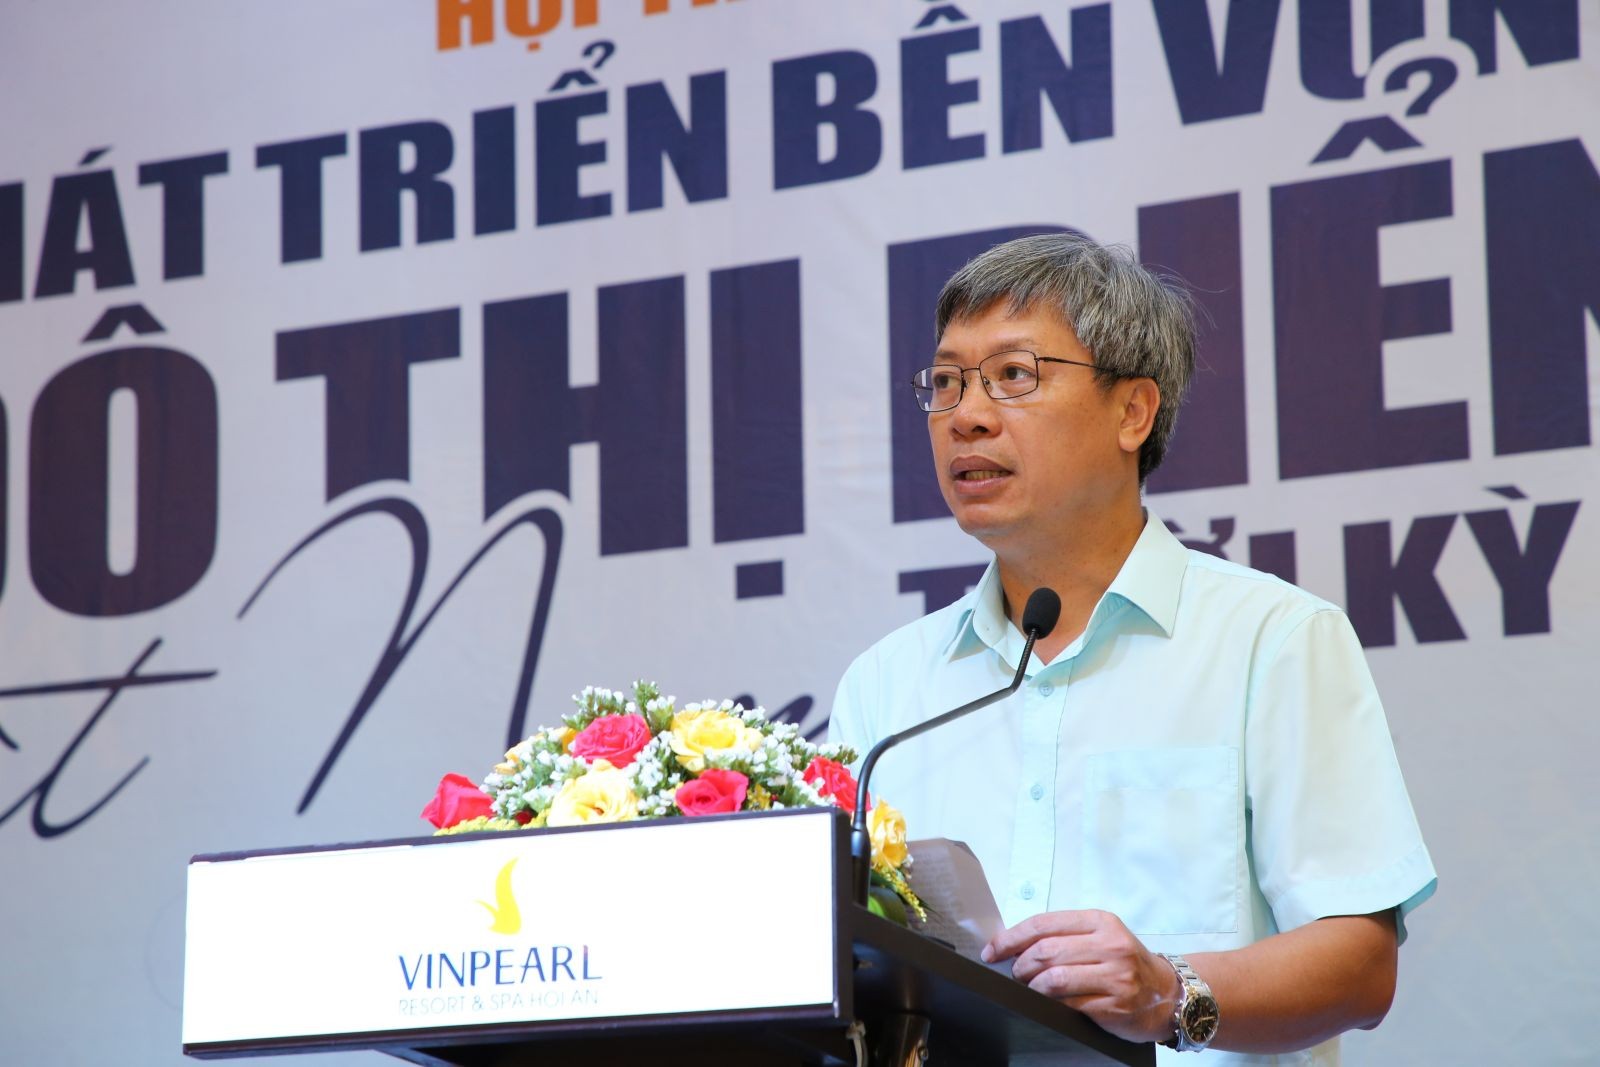 
Ông Hồ Quang Bửu - Phó Chủ tịch UBND tỉnh Quảng Nam
